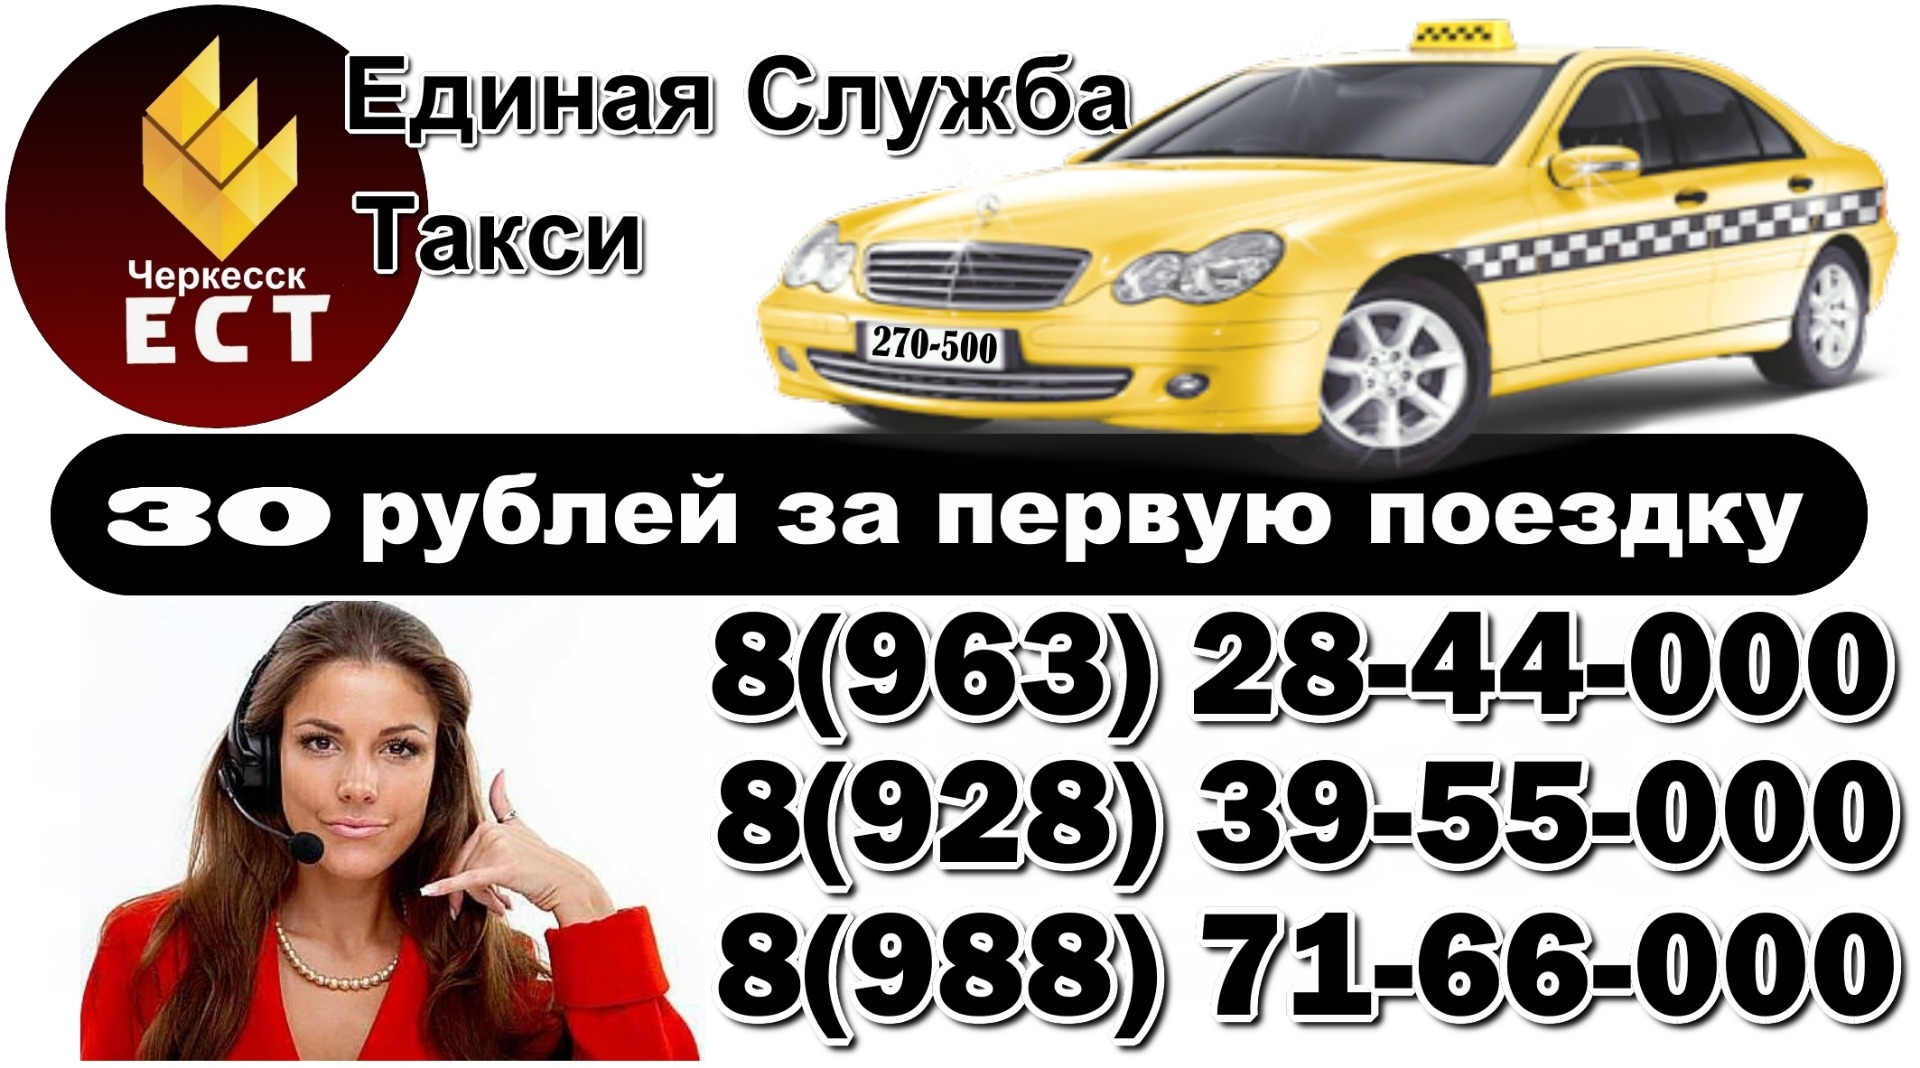 Ставрополь вызов такси телефоны. Номер телефона такси. Номера службы такси. Такси Единая служба номер. Такси Черкесск.